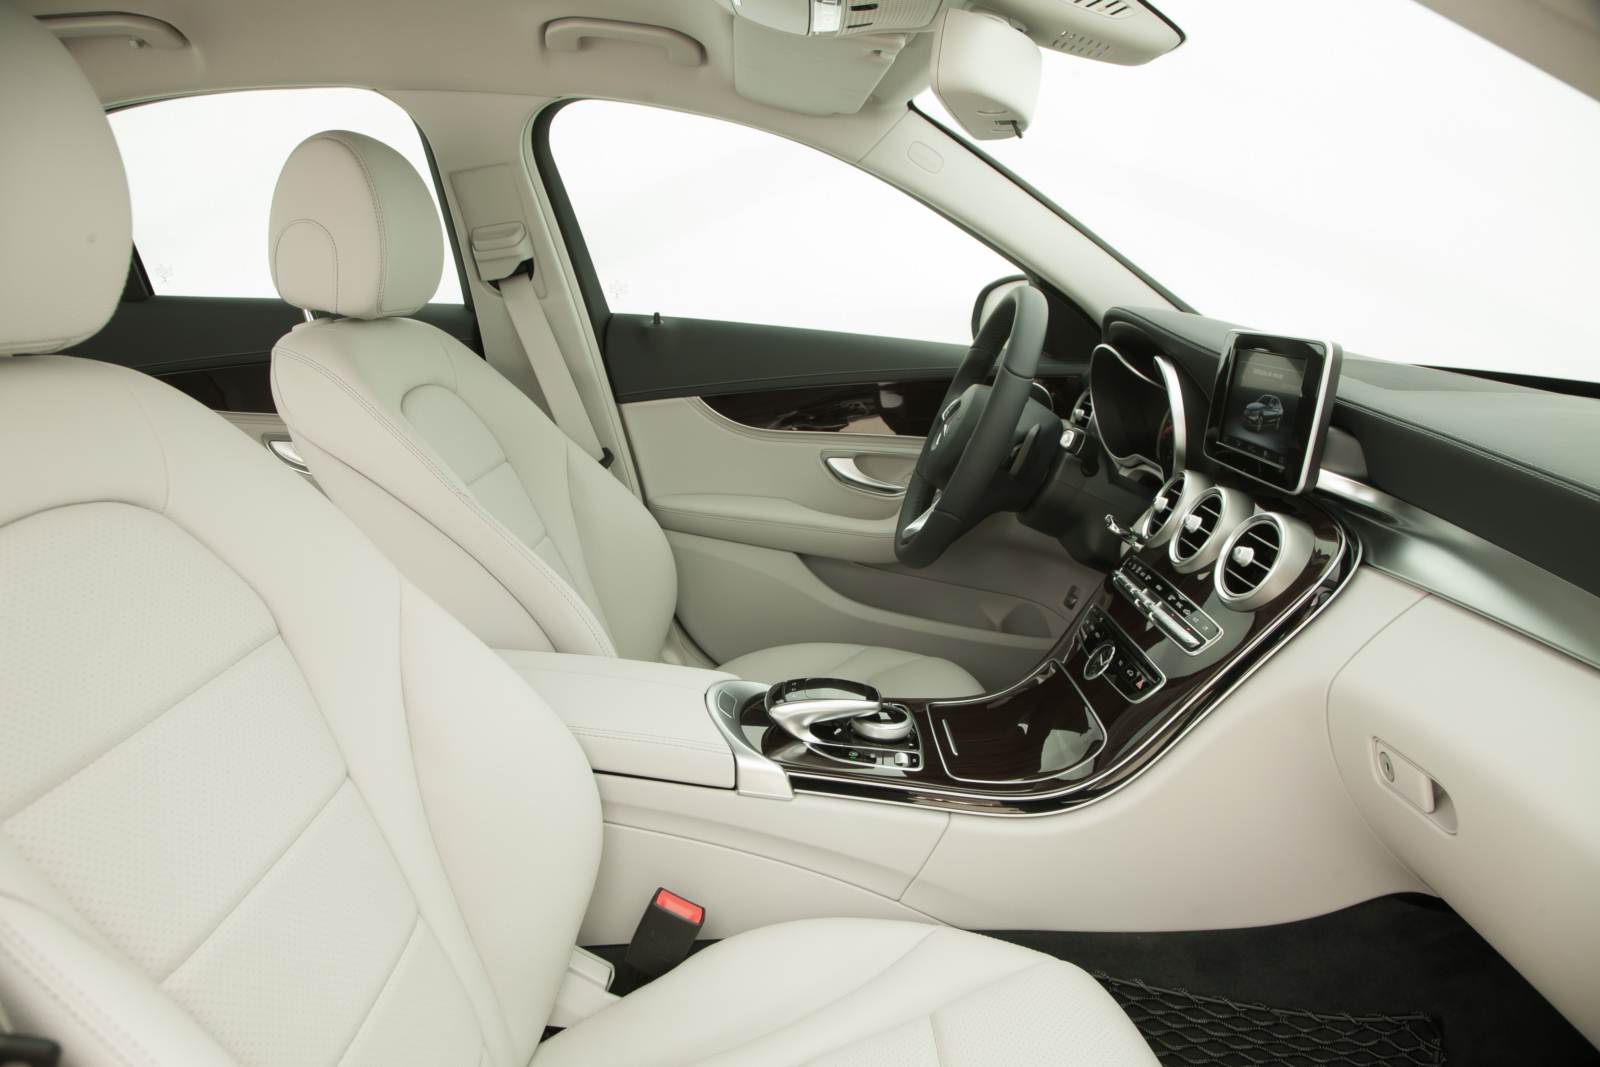 Mercedes-Benz C180 Exclusive - interior bege